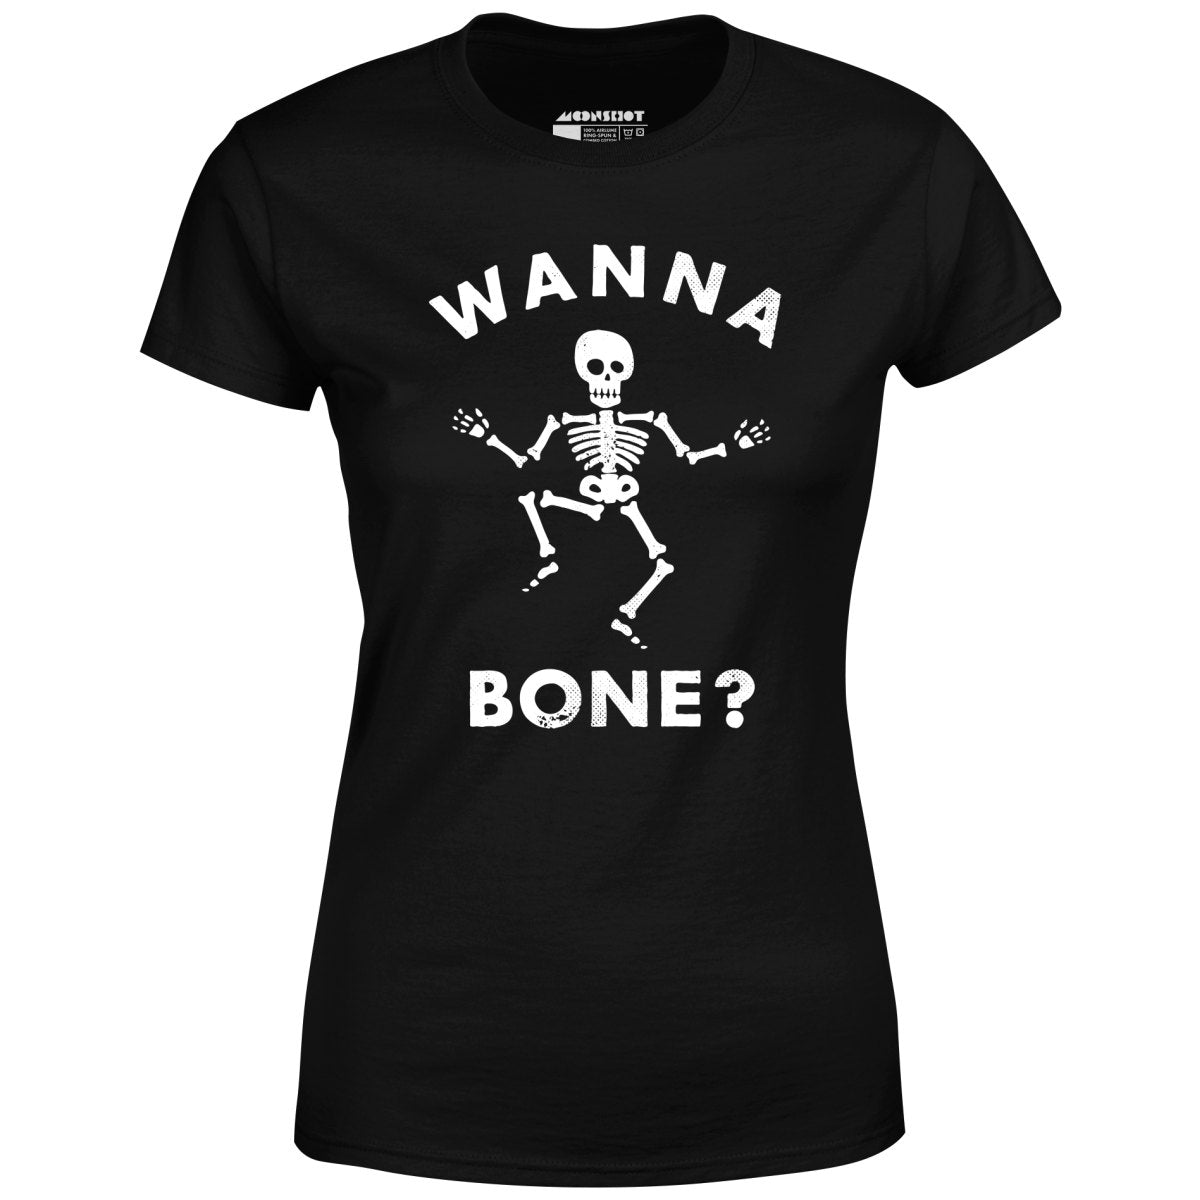 Wanna Bone? - Women's T-Shirt